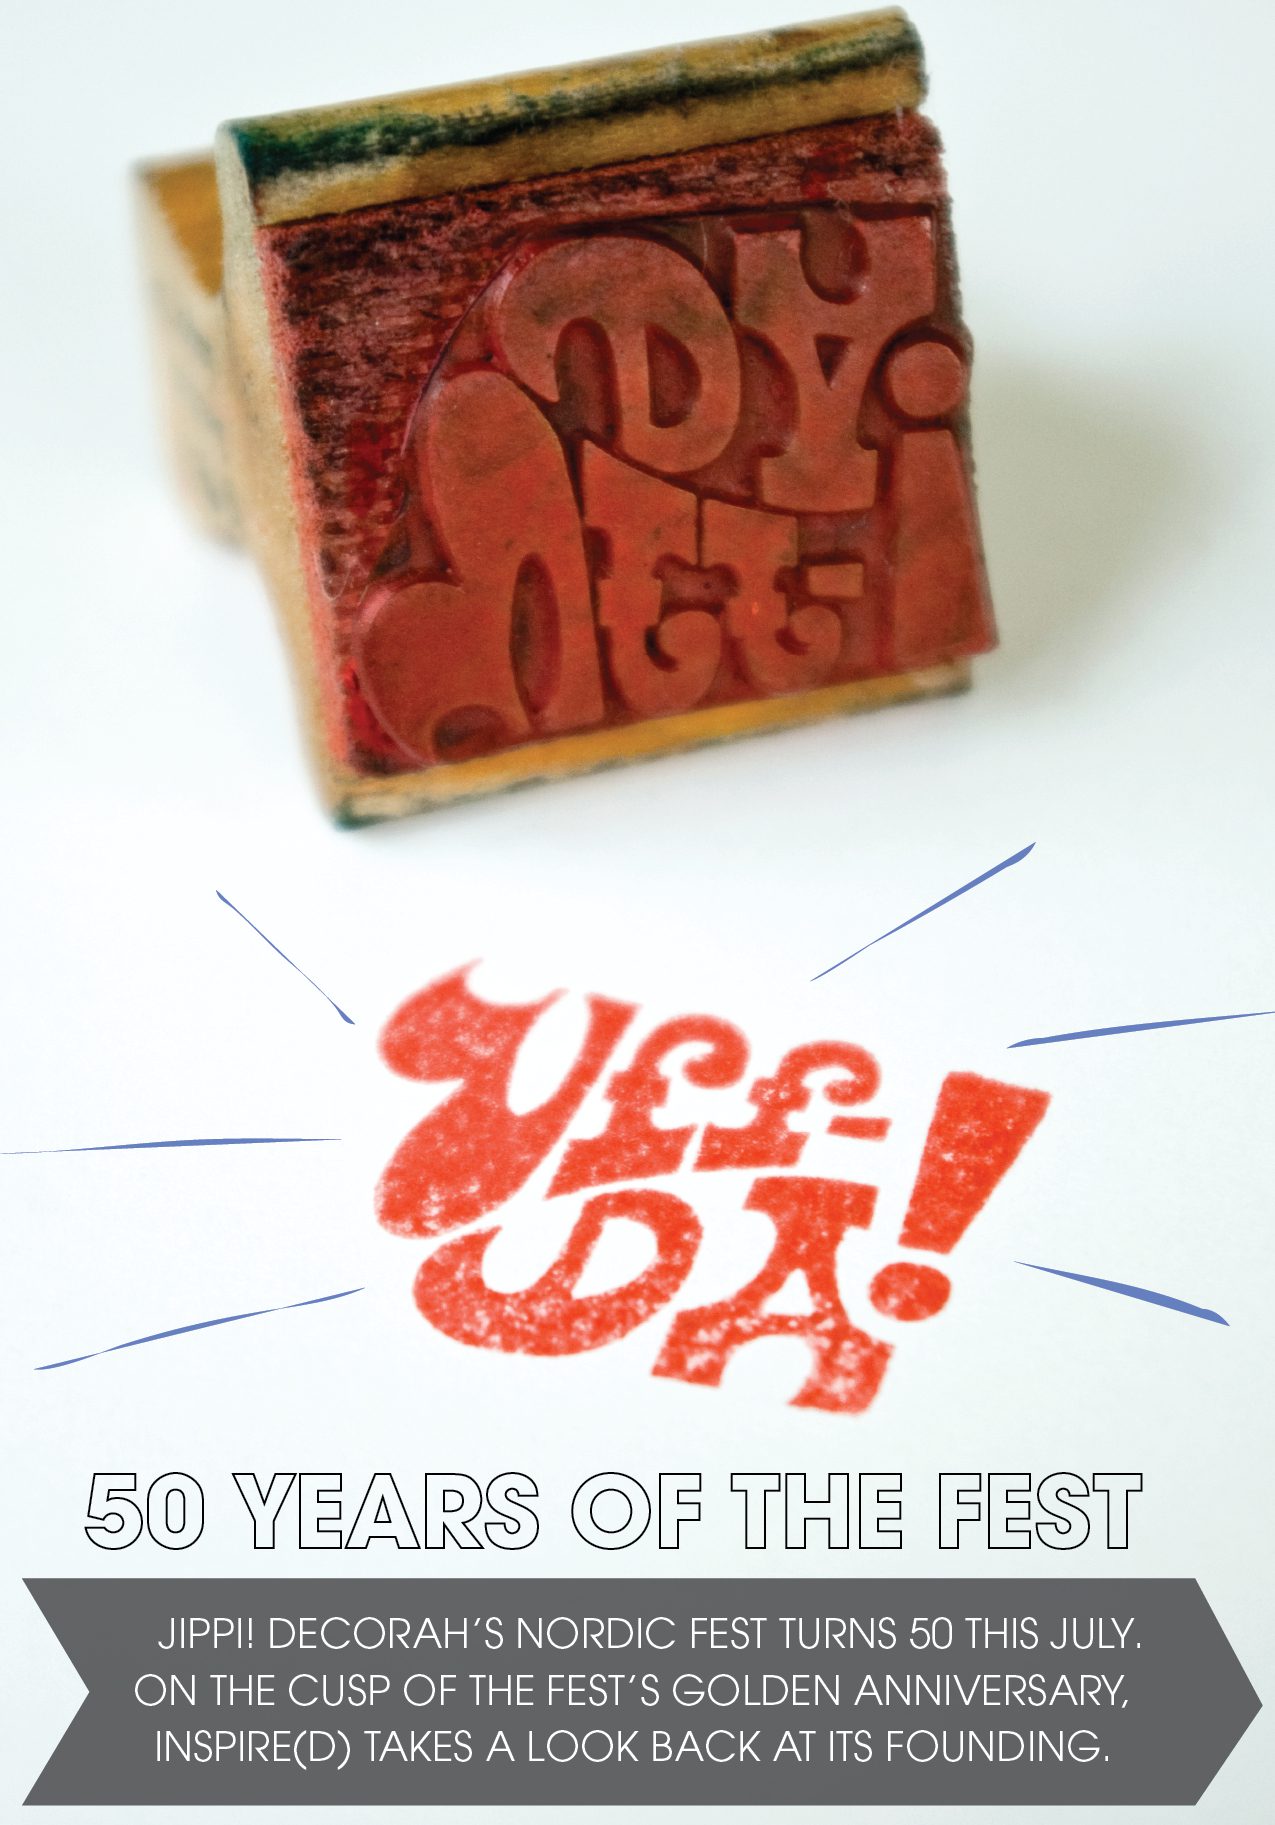 Nordic Fest Celebrates 50 Years!